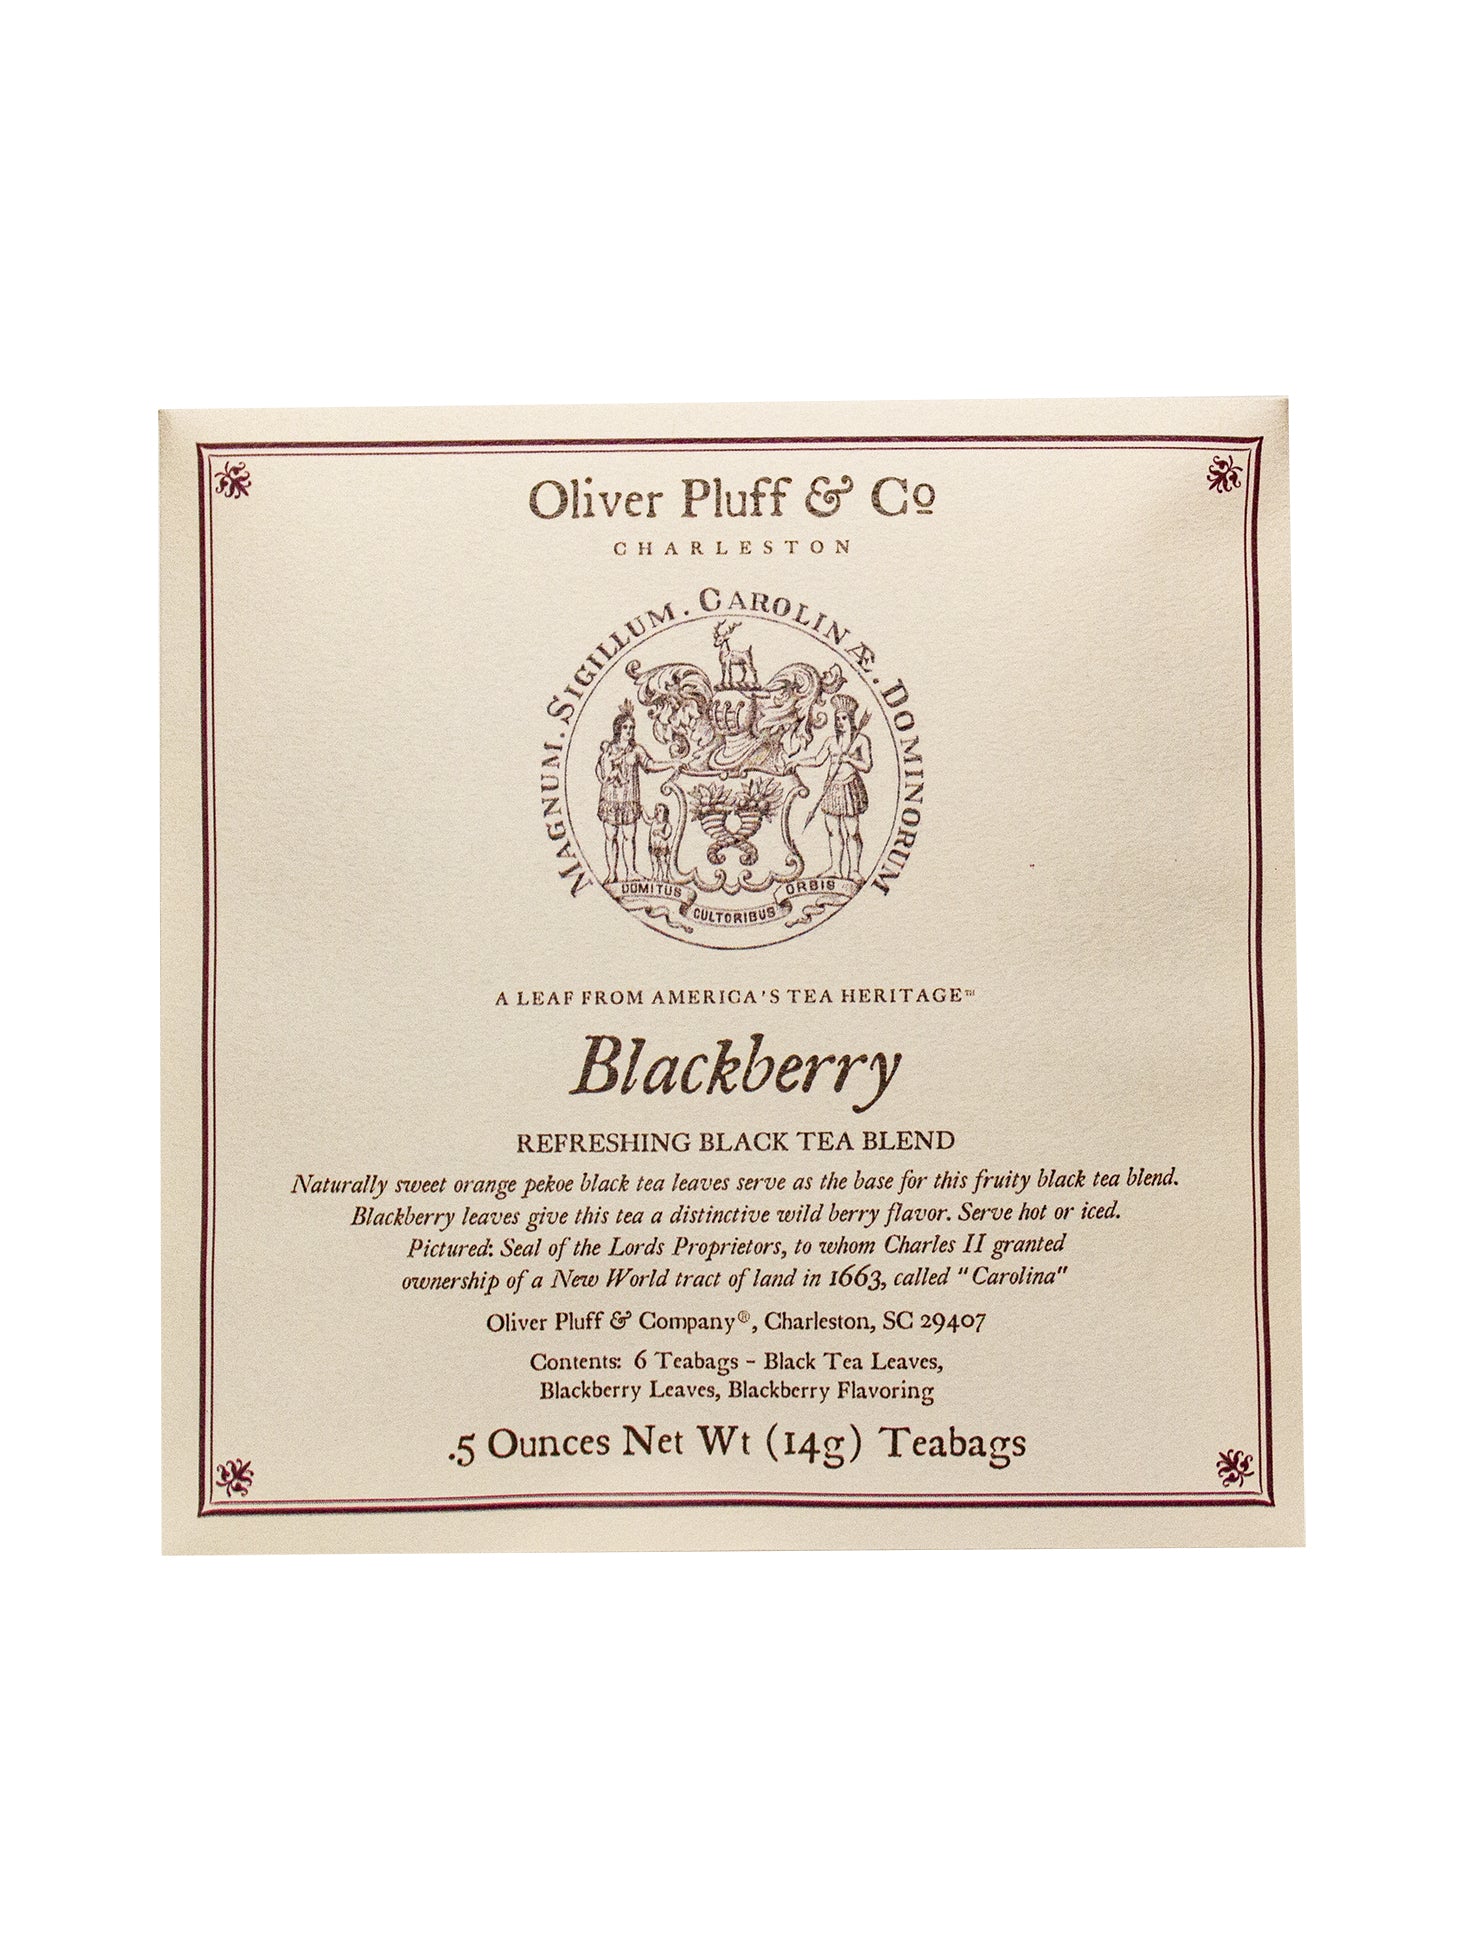 Oliver Pluff & Co. Blackberry Tea Bag Envelopes Weston Table